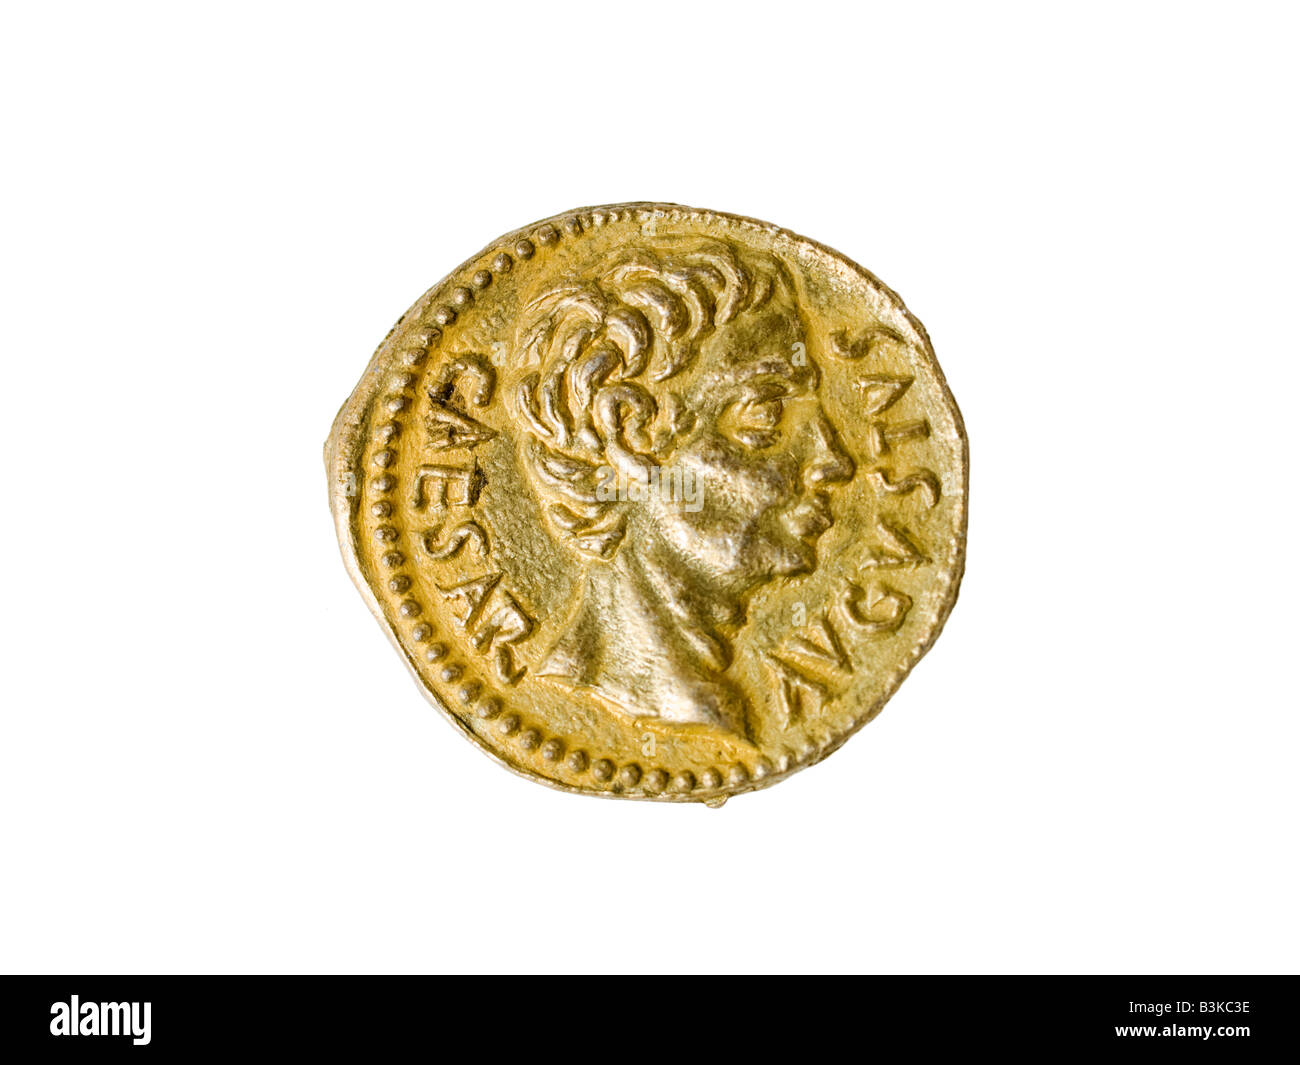 Antica moneta romana immagini e fotografie stock ad alta risoluzione - Alamy